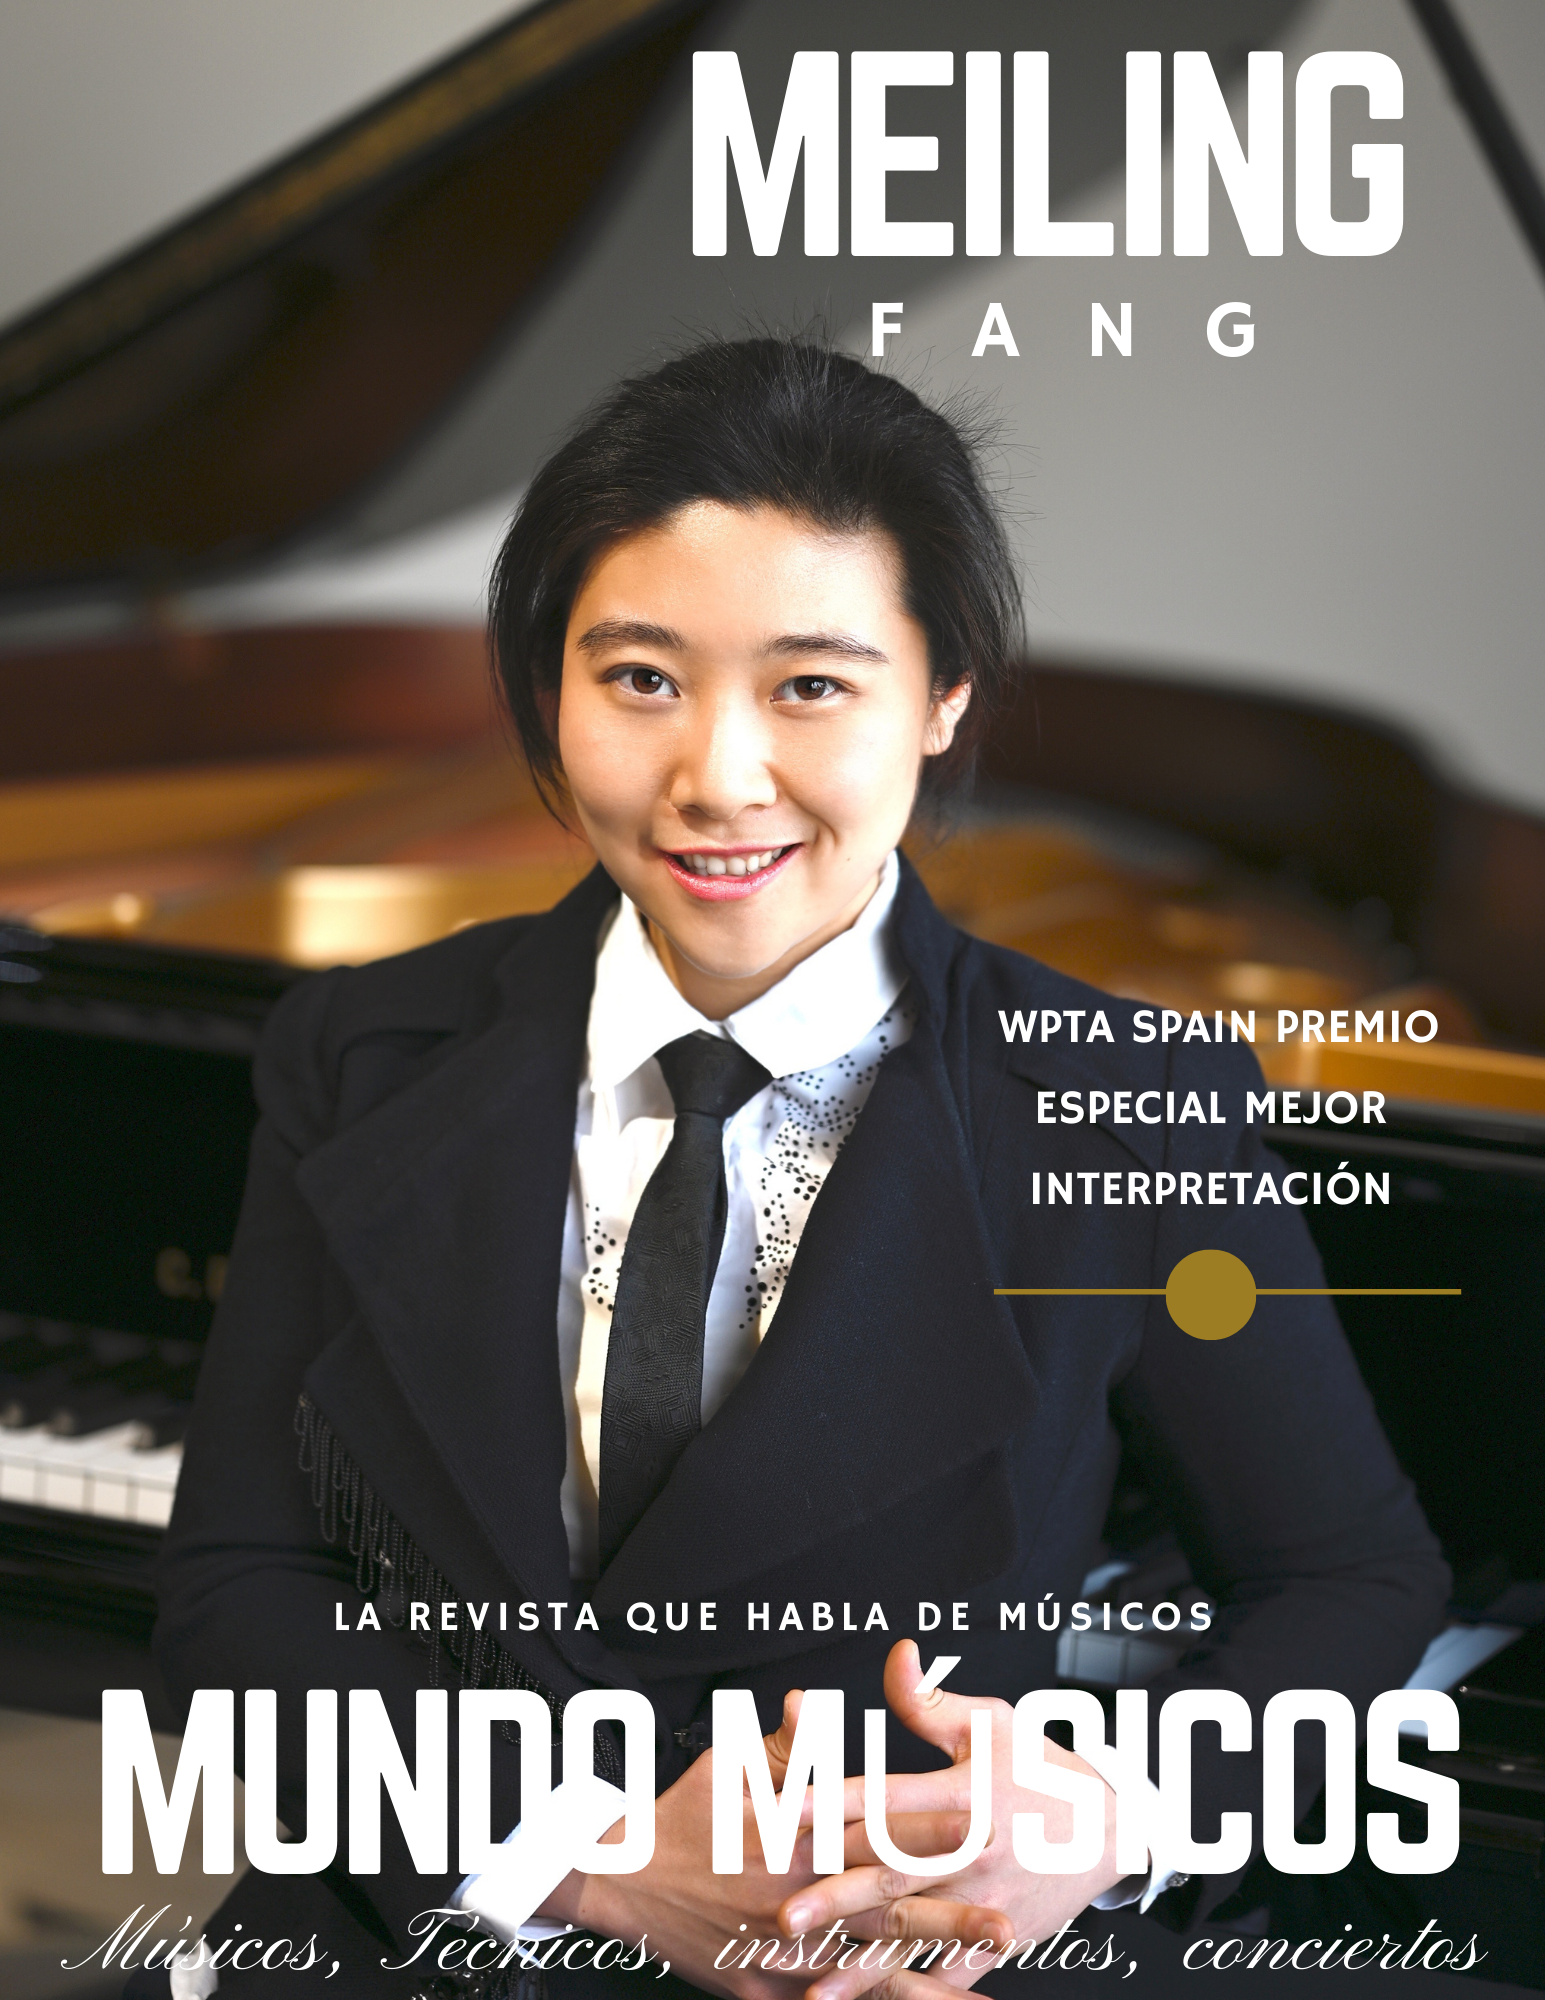 Meiling Fang, Pianista